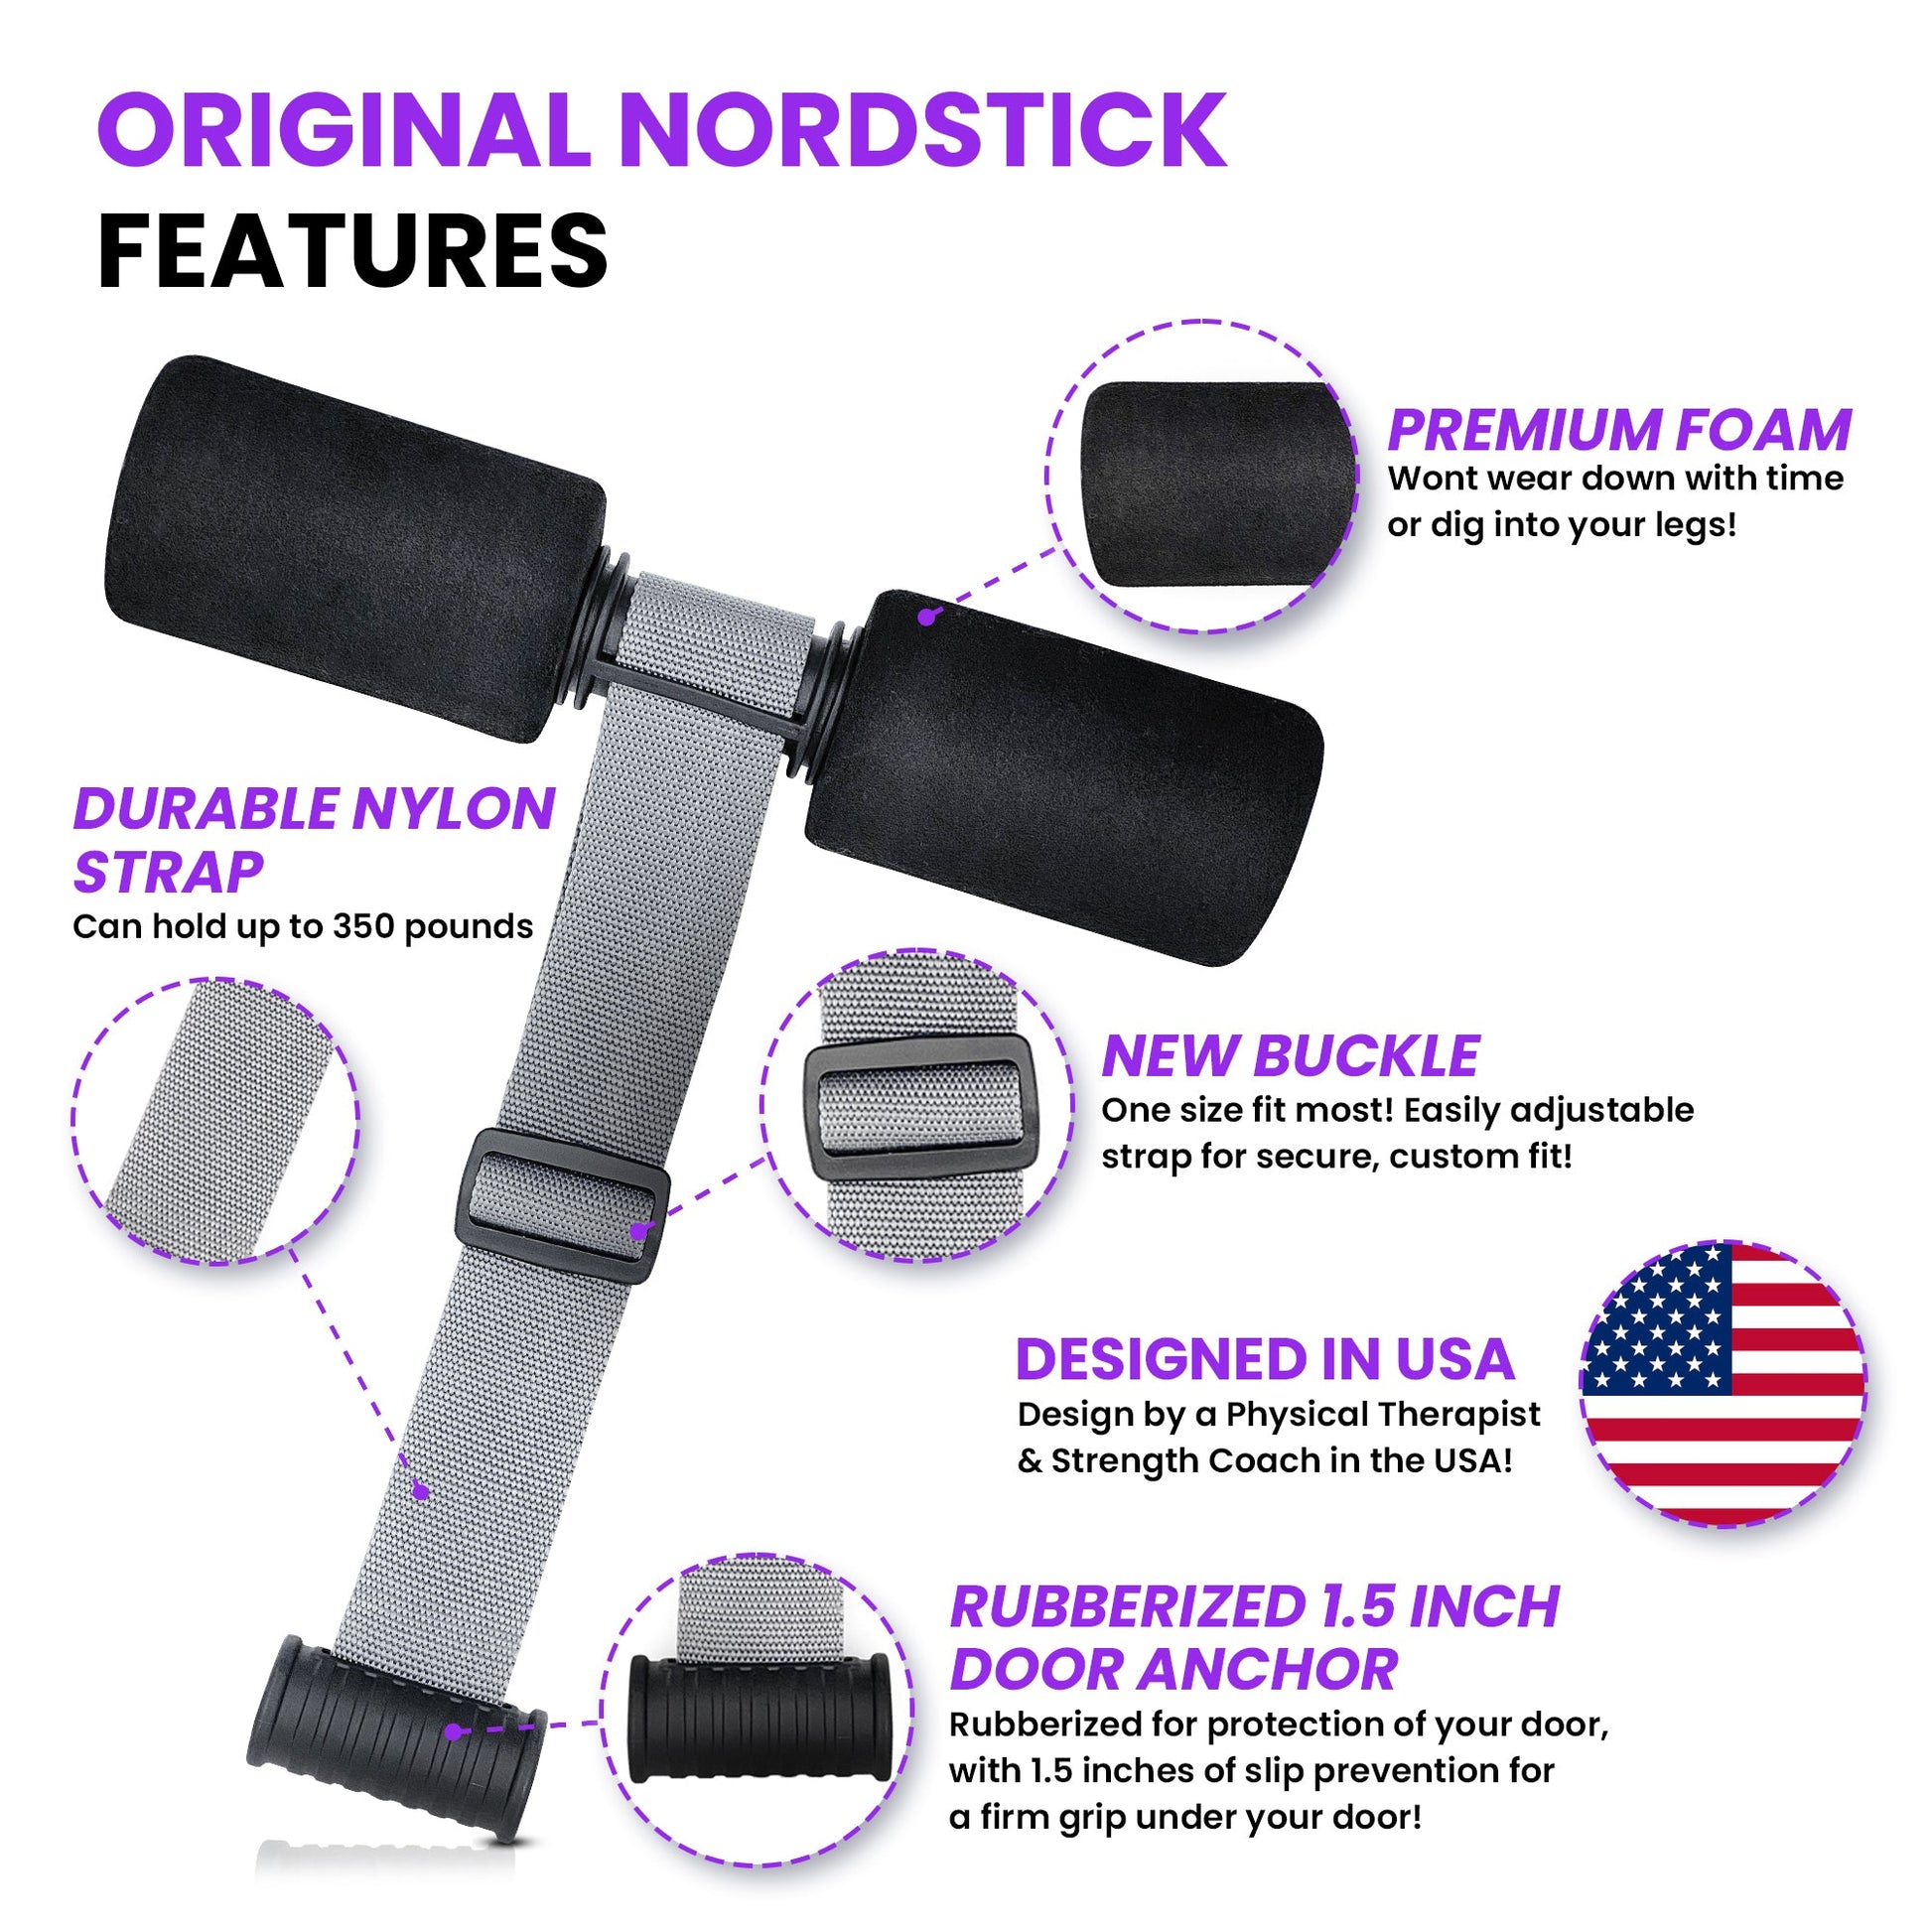 The Original Nordstick - The Nordstick